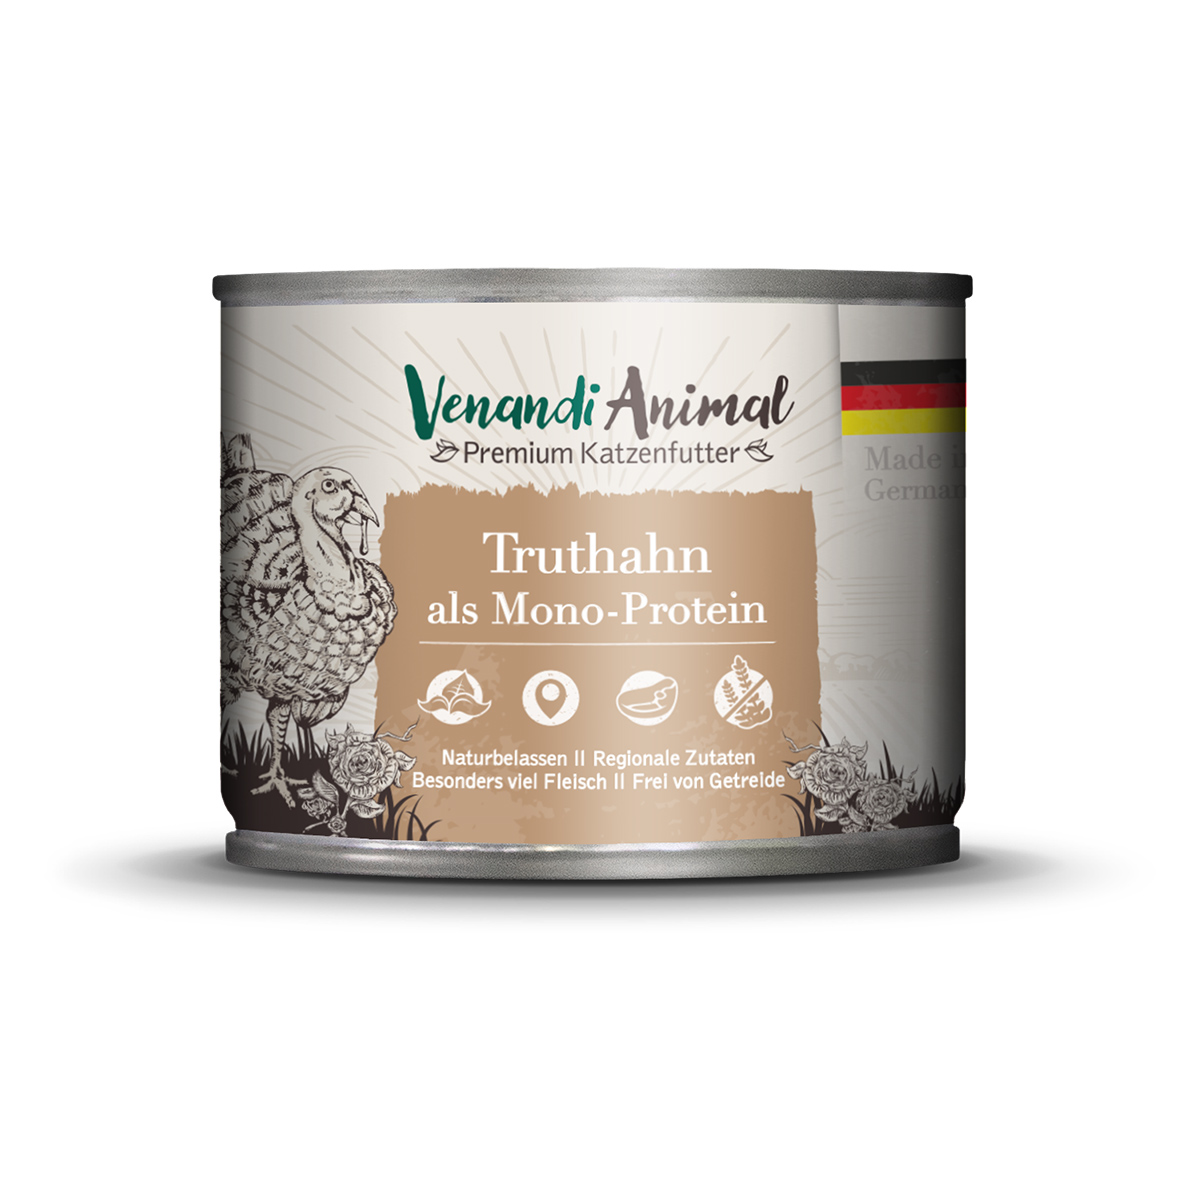 Venandi Animal – Truthahn als Monoprotein 12x200g